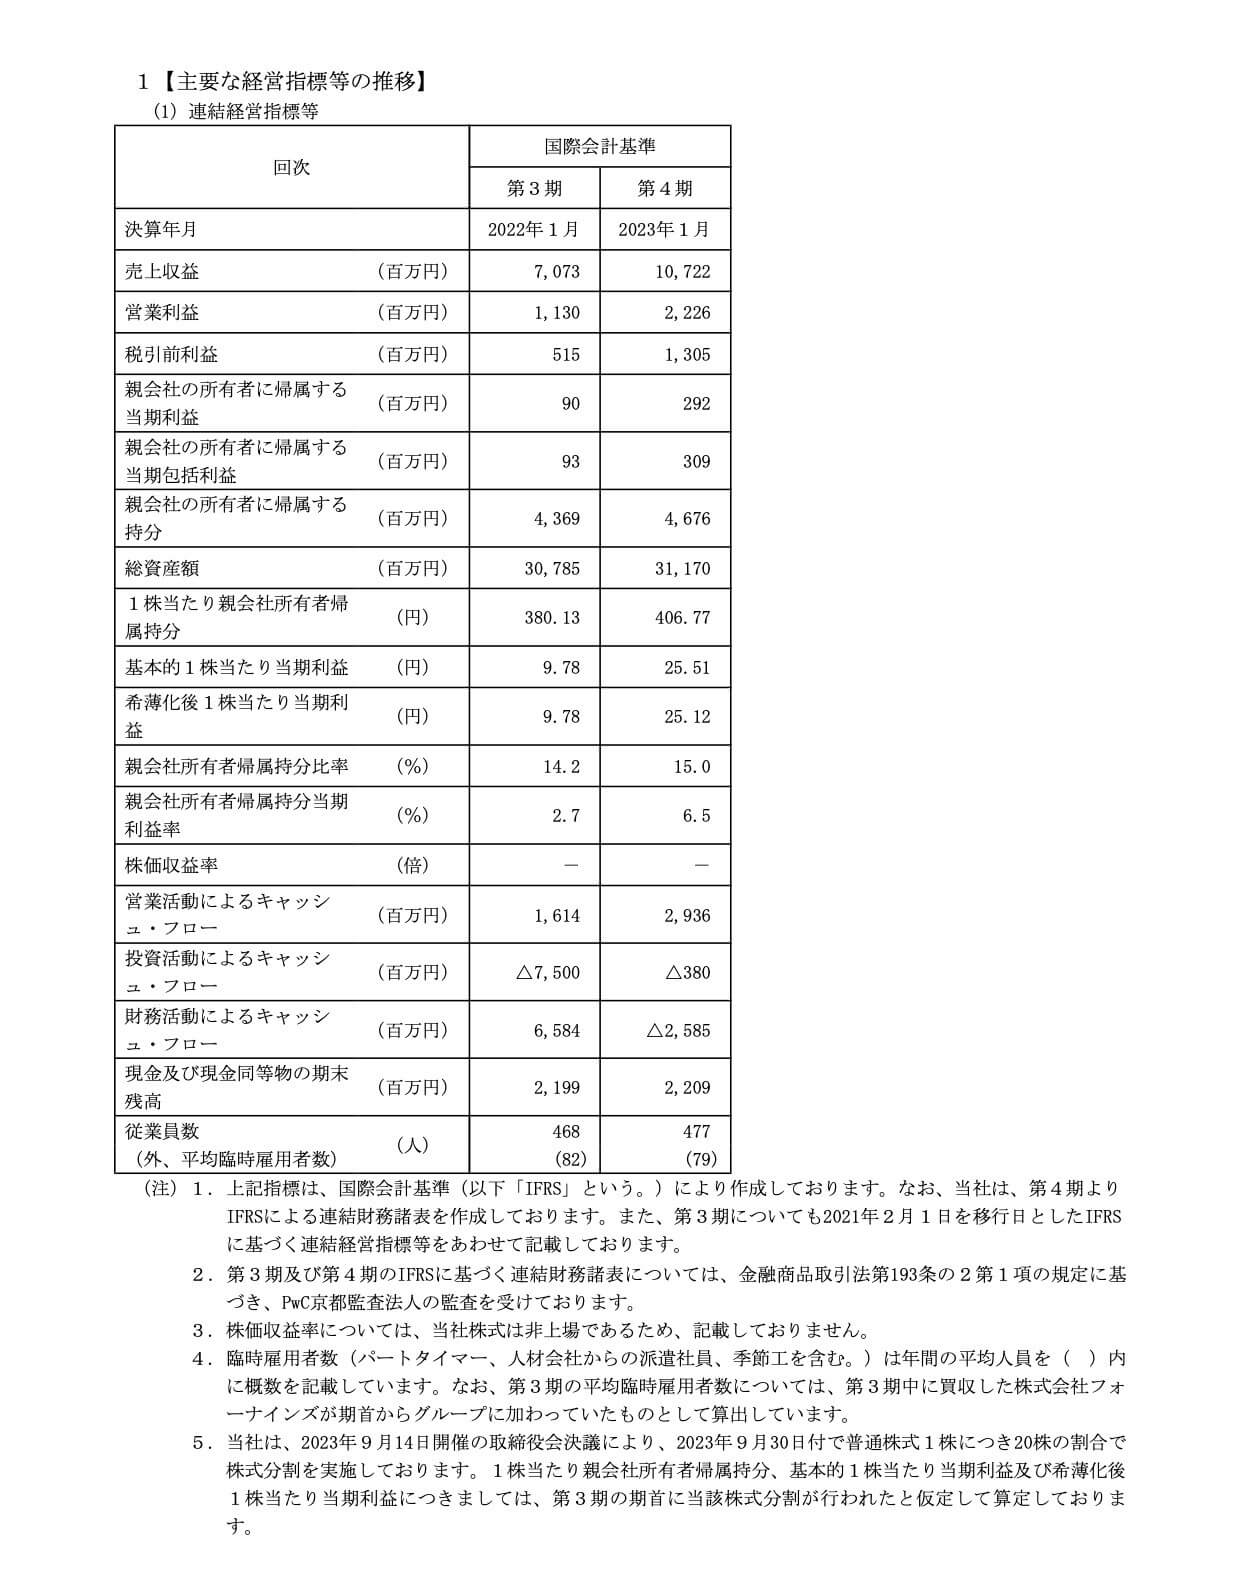 Japan Eyewear Holdings(5889)の主要な経営指標等の推移(連結)